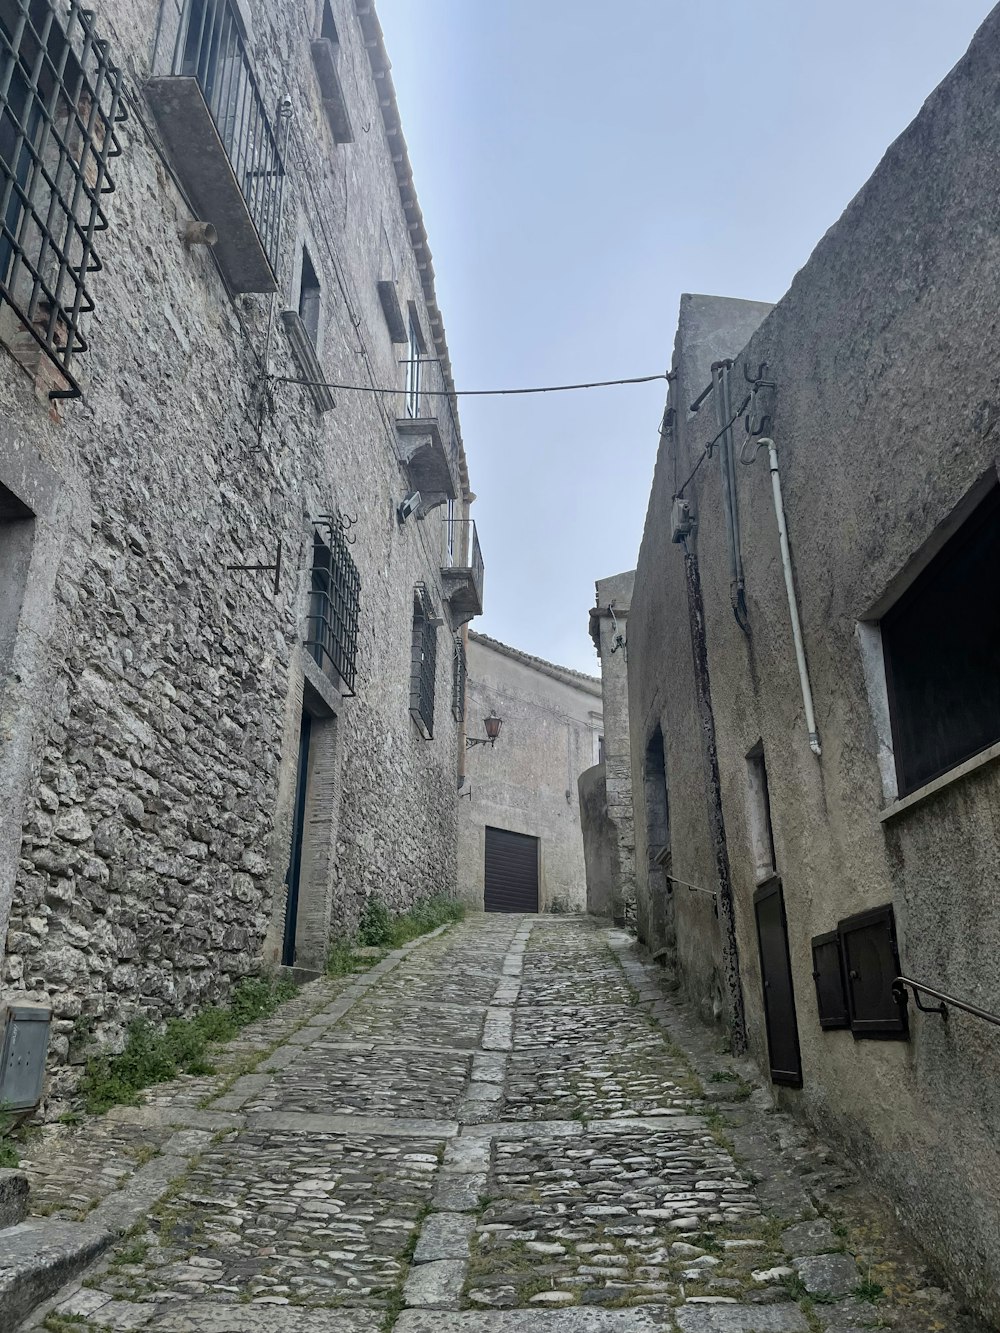 Une rue pavée étroite dans une vieille ville